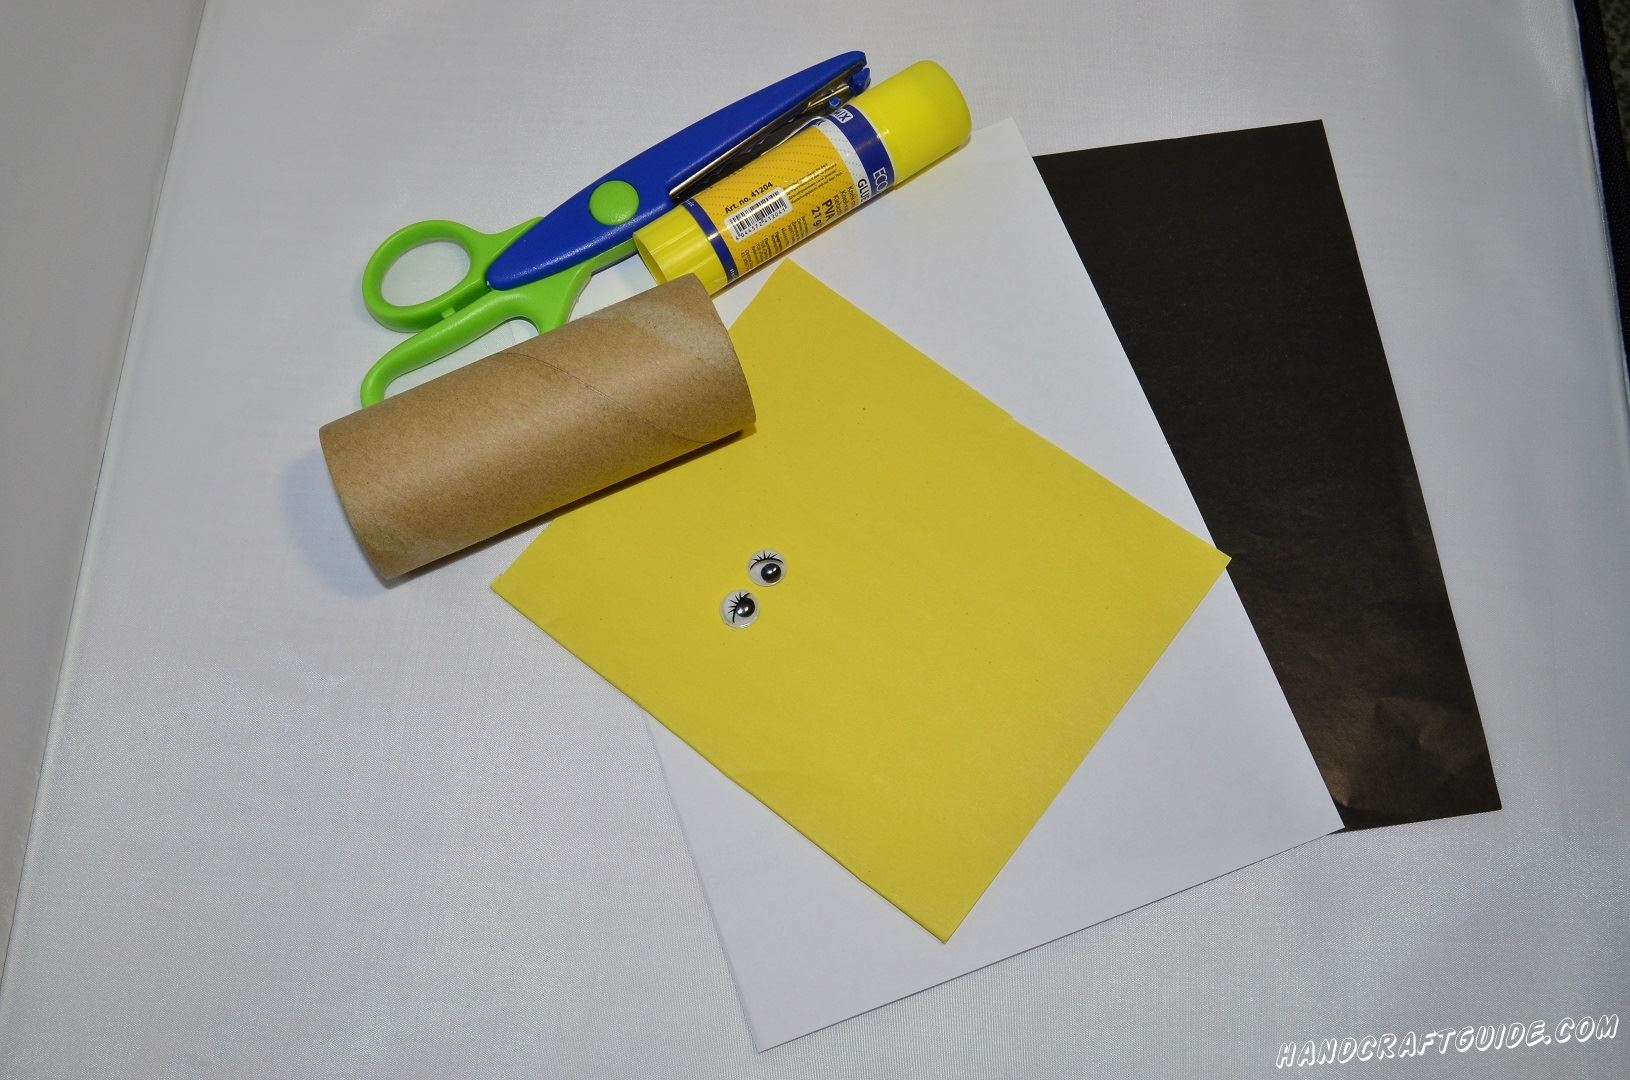 Картонный конус полностью завернём в желтую бумагу